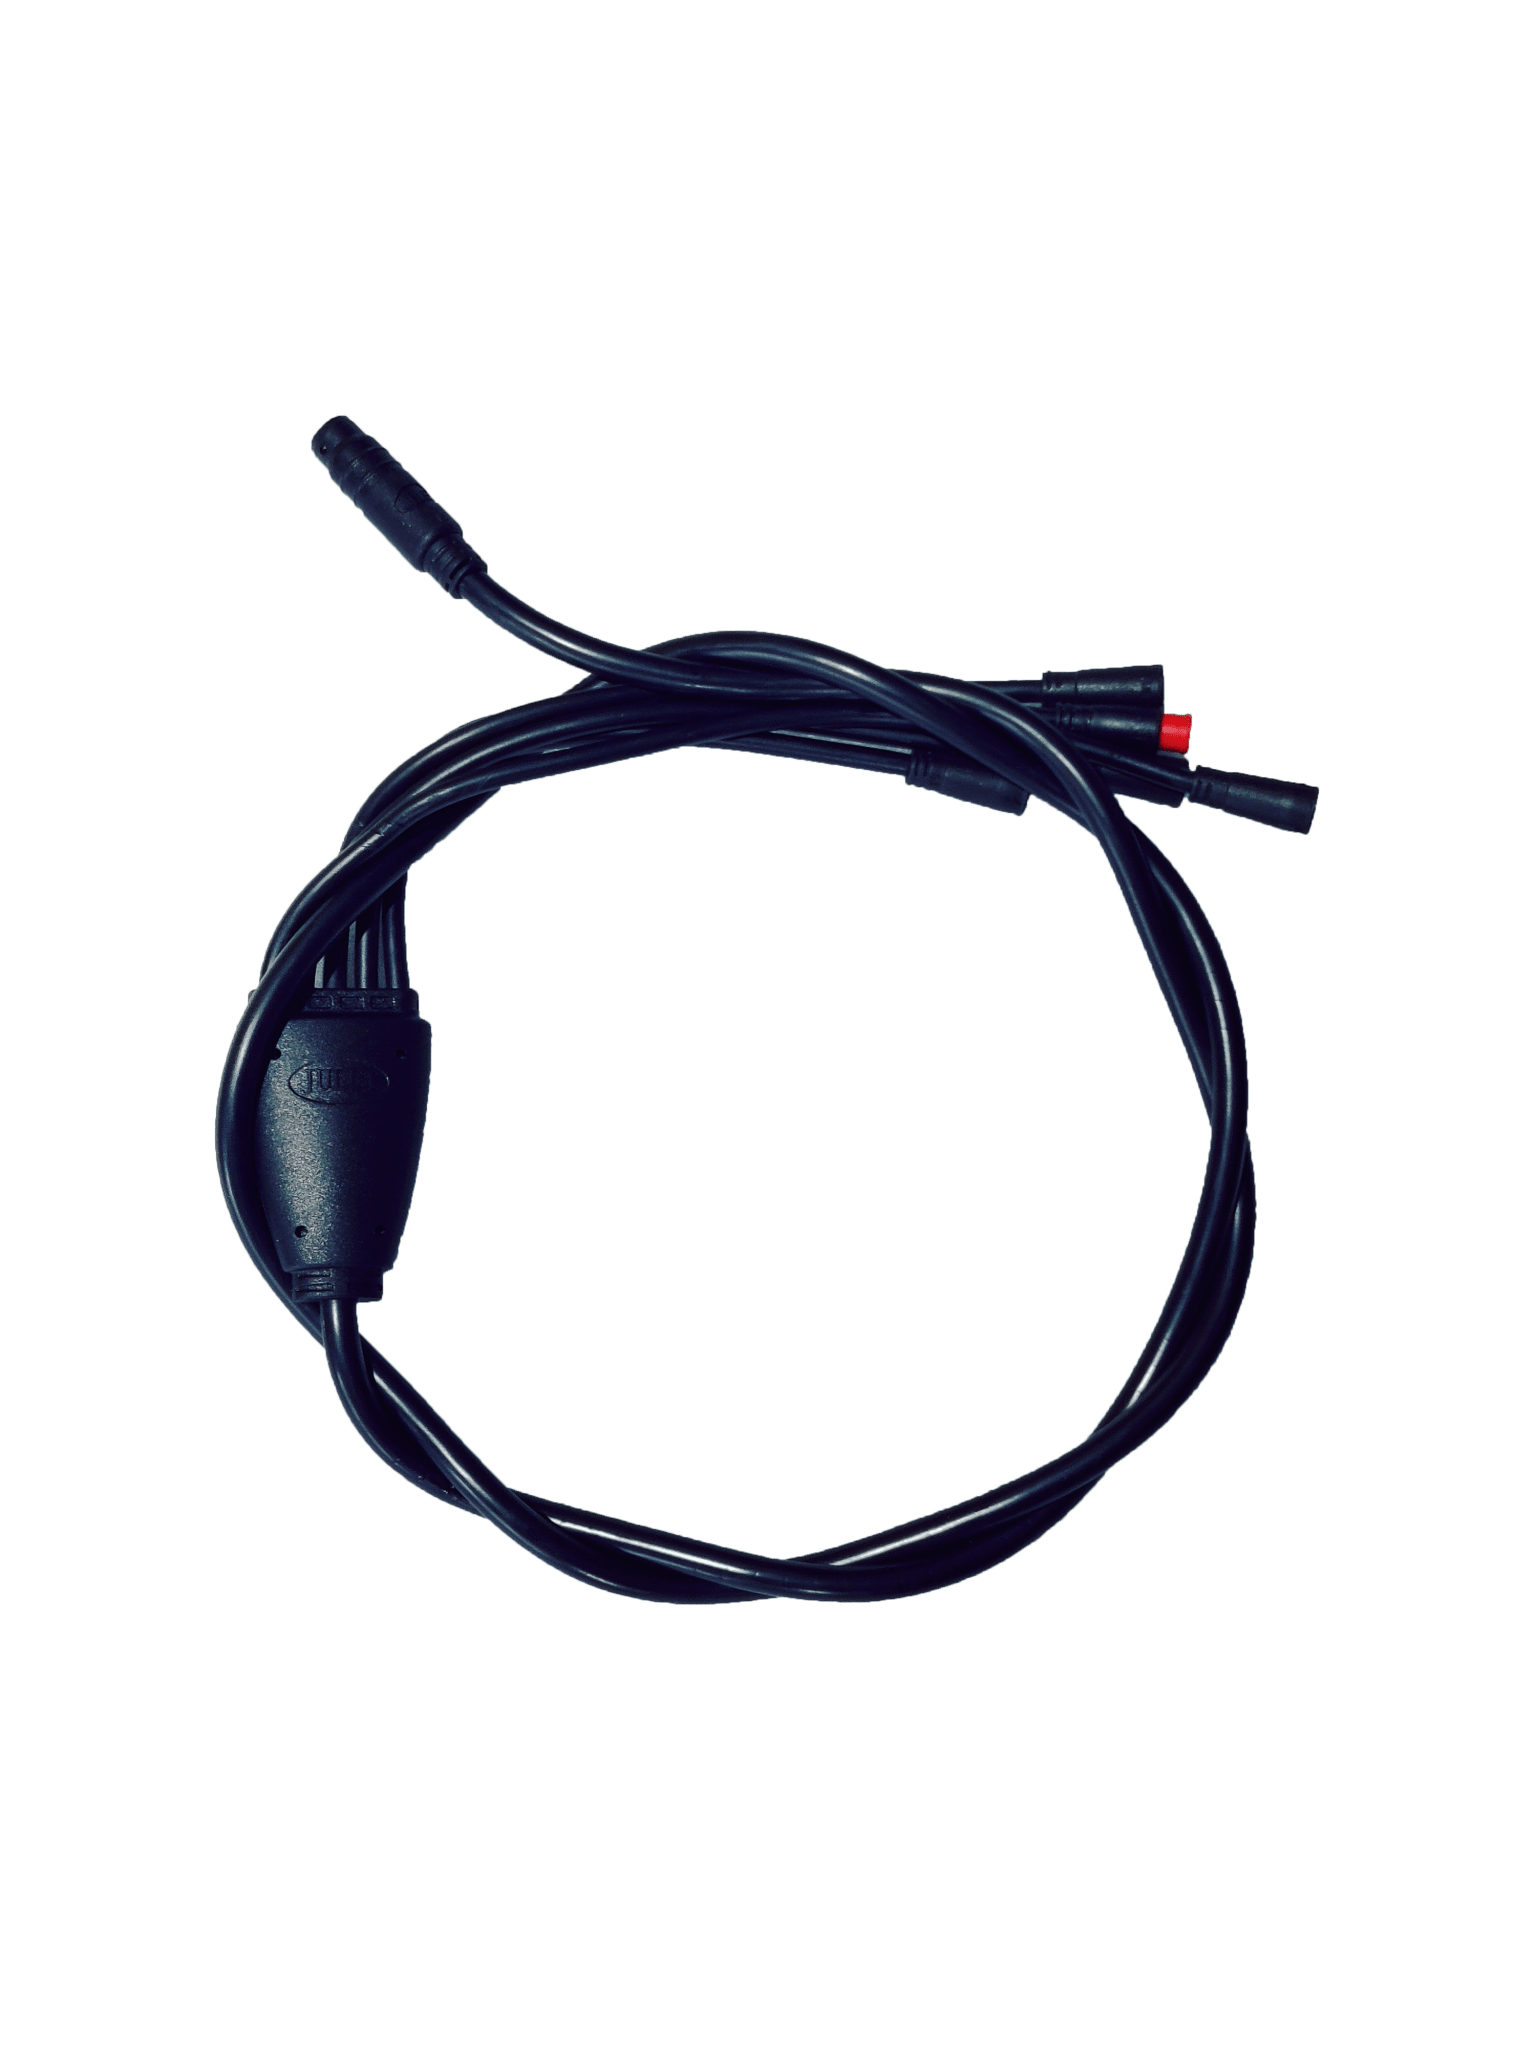 Regular Wire Harness.DE- E13/DE- E18 - GOTRAX